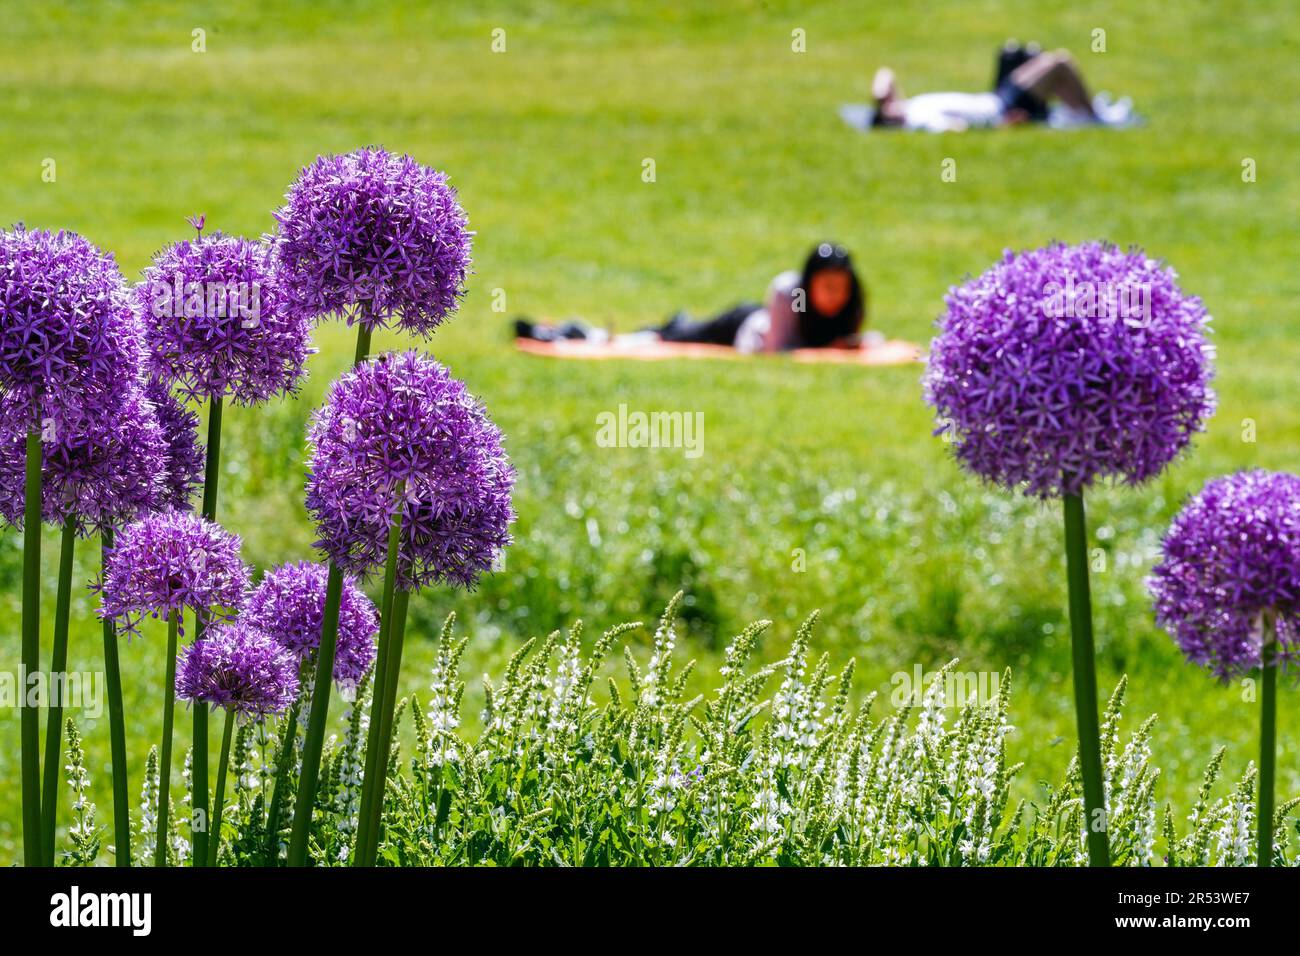 Les poireaux ornementaux fleurissent dans la prairie d'un parc d'Aix-la-Chapelle, où les jeunes sont au soleil. Aachen, Allemagne --- Blühender Zierlauch auf der Wiese eines Parks in Aachen, auf der junge Leute in der sonne liegen. Aix-la-Chapelle, Allemagne Banque D'Images